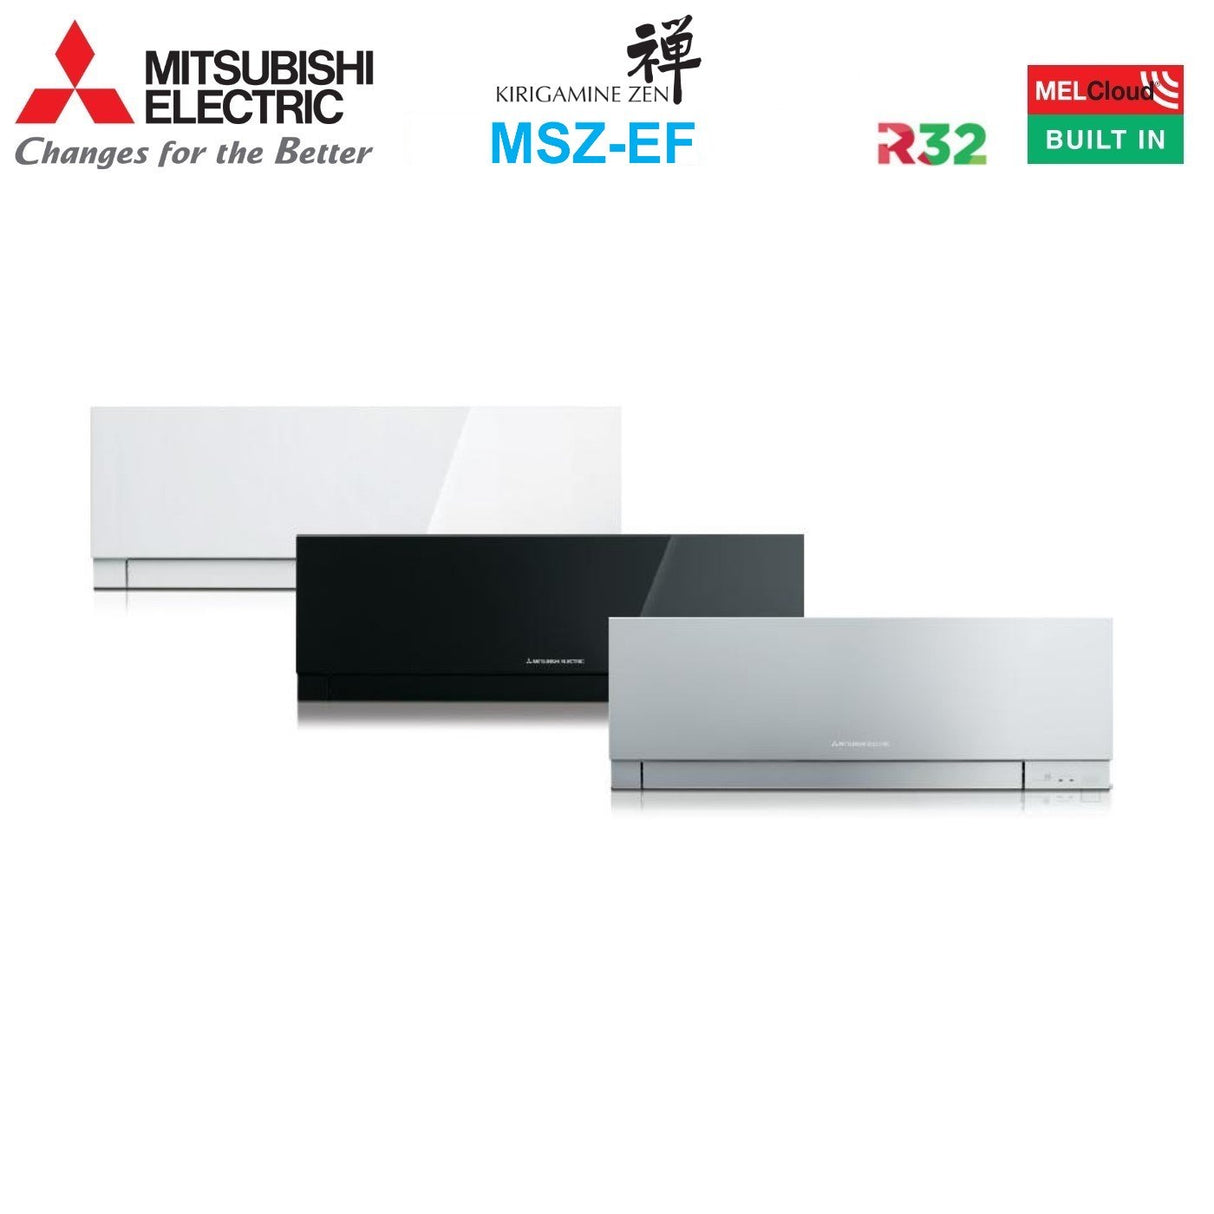 immagine-3-mitsubishi-electric-climatizzatore-condizionatore-mitsubishi-electric-dual-split-inverter-serie-kirigamine-zen-white-msz-ef-912-con-mxz-2f42vf-r-32-wi-fi-integrato-colore-bianco-900012000-ean-8059657018786